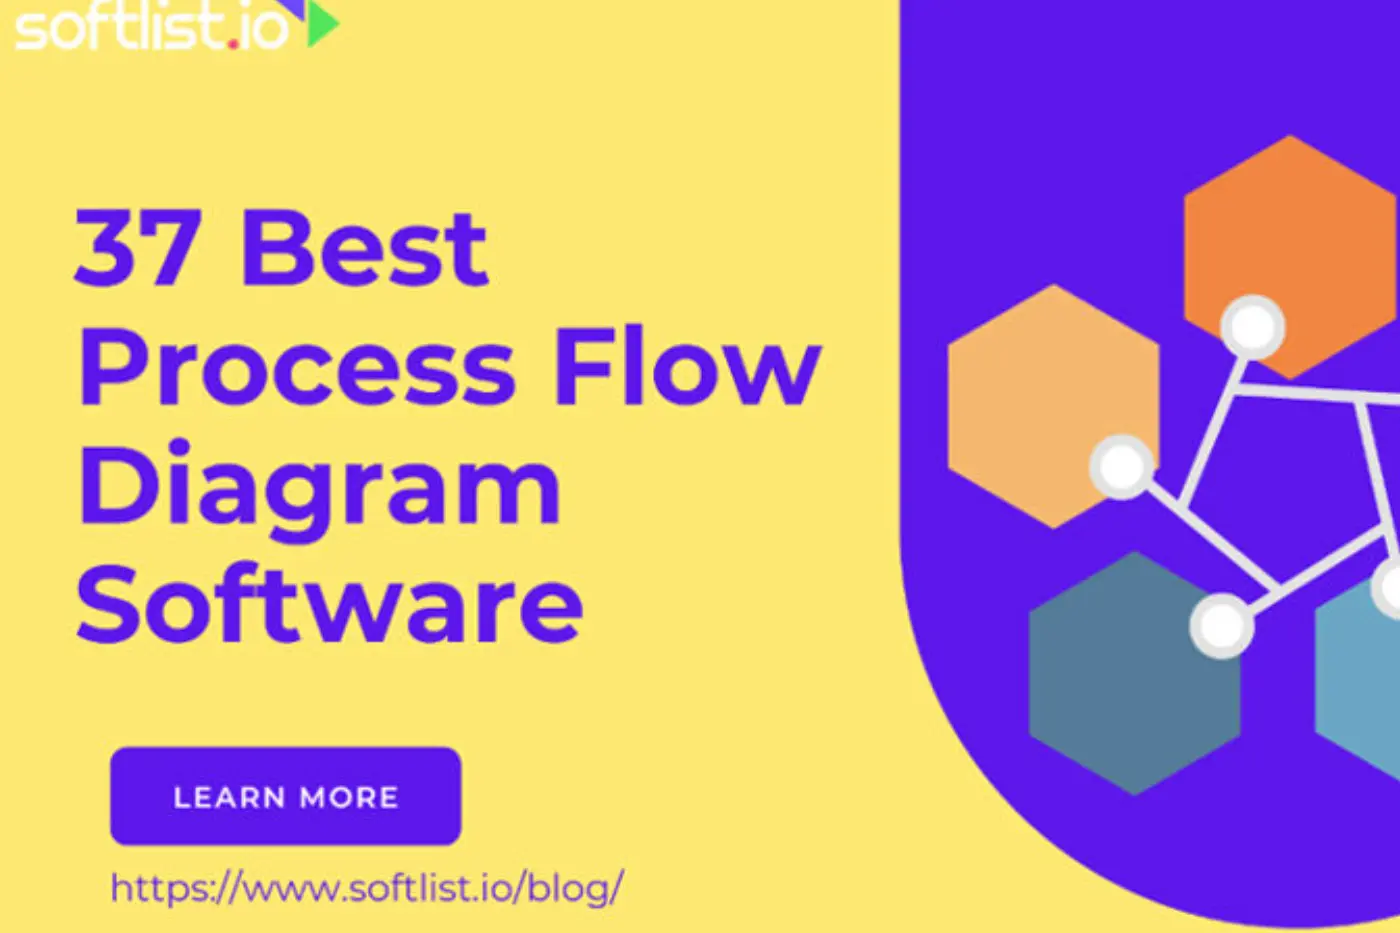 37 Best Process Flow Diagram Software